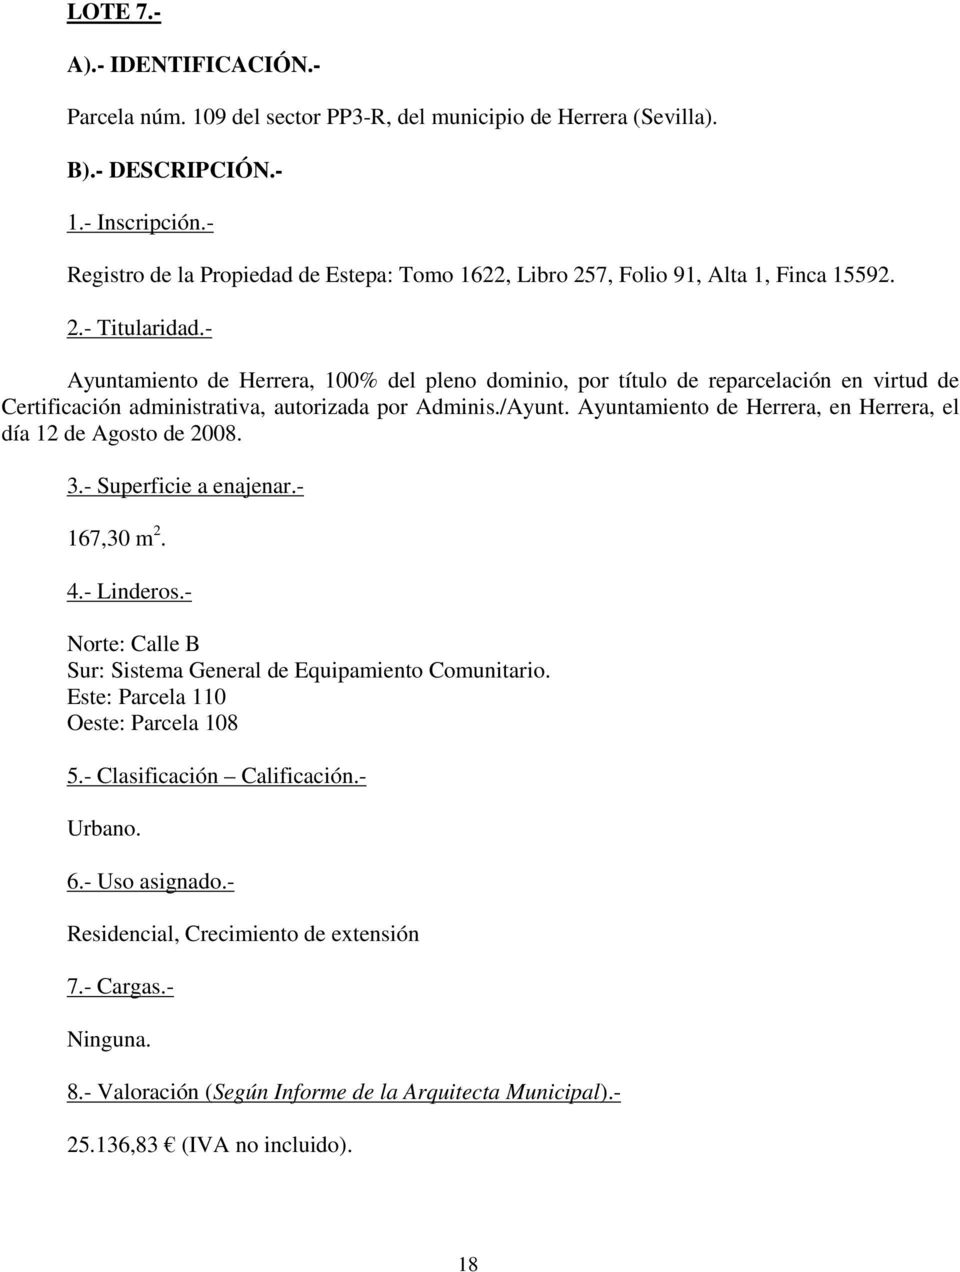 - Ayuntamiento de Herrera, 100% del pleno dominio, por título de reparcelación en virtud de Certificación administrativa, autorizada por Adminis./Ayunt.